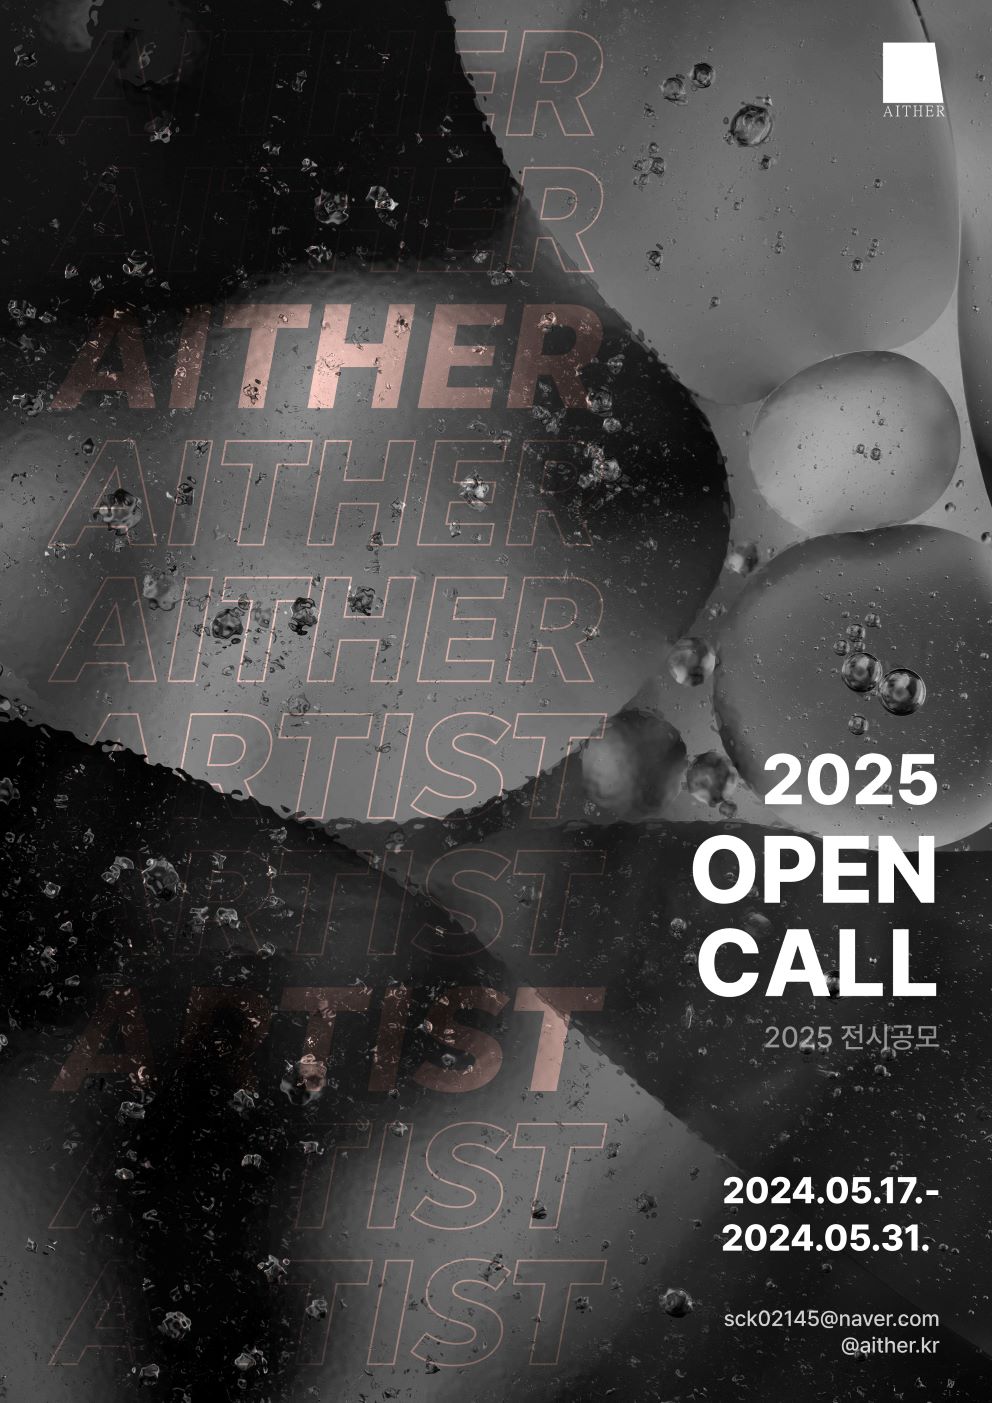 2025 예술협회 아이테르 범일가옥 OPEN CALL 참여자 모집